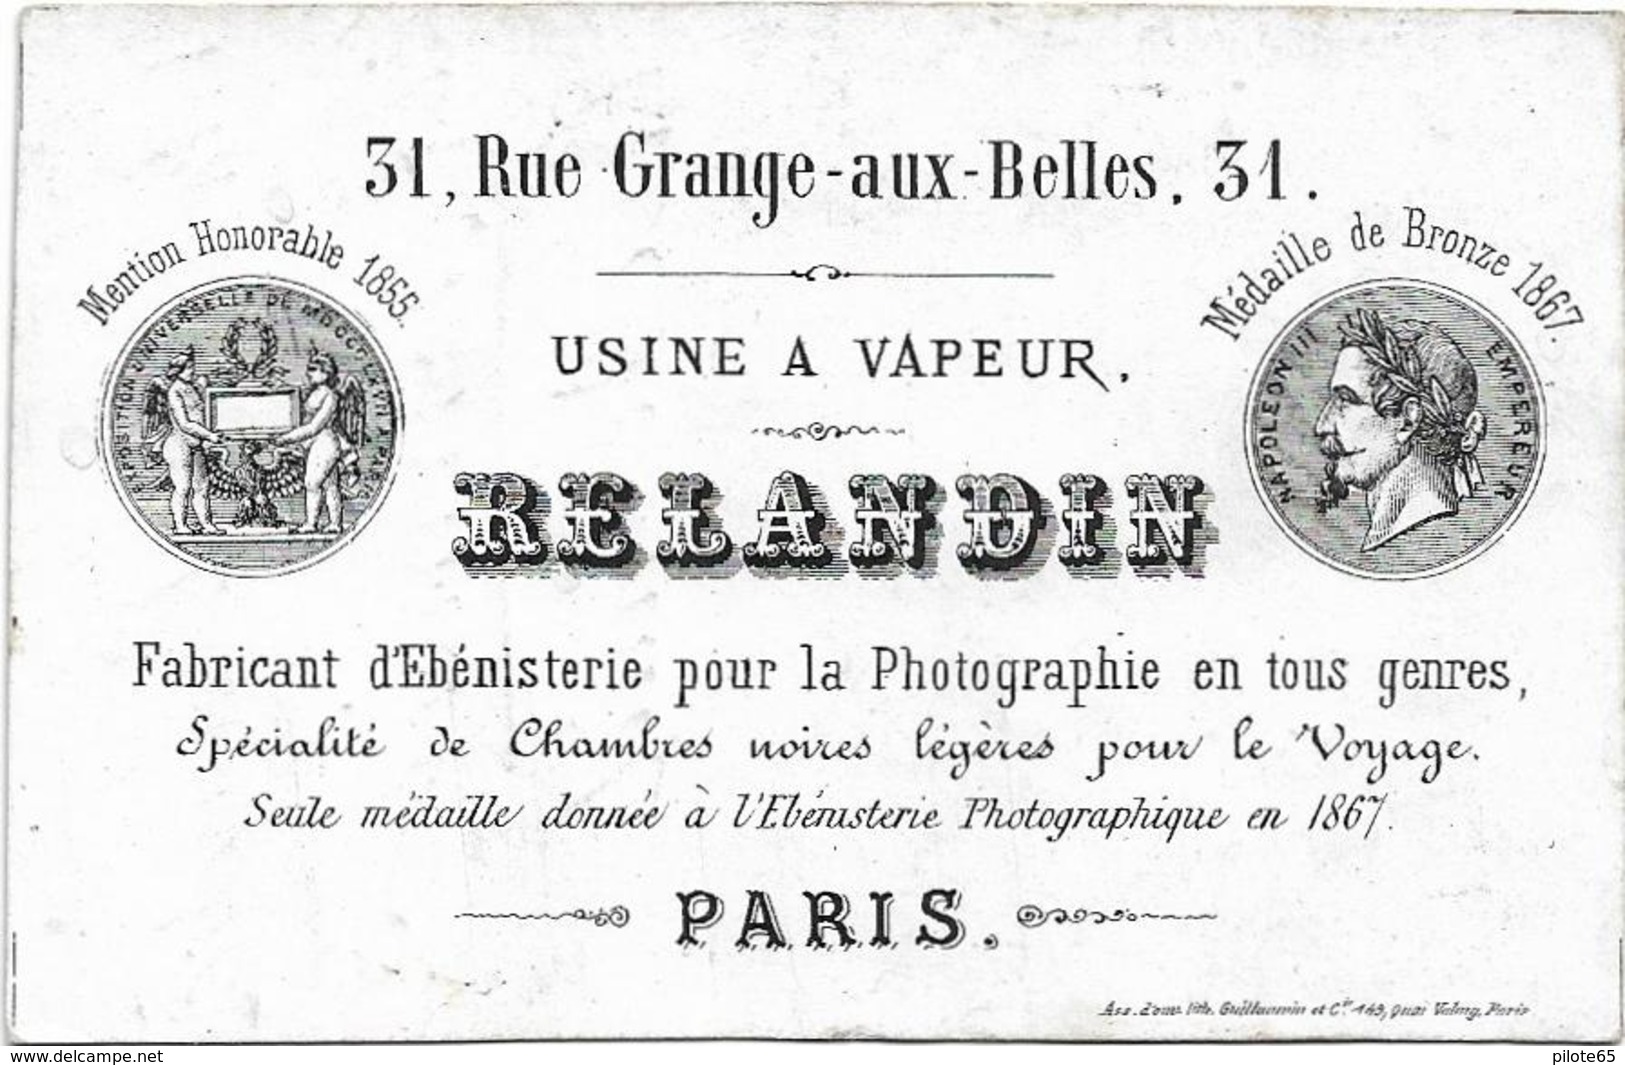 USINE A VAPEUR RELANDIN 31, RUE GRANGES - AUX - BELLES, 31 PARIS 10ème / FABRICANT D' EBENISTERIE POUR LA PHOTOGRAPHIE - Petits Métiers